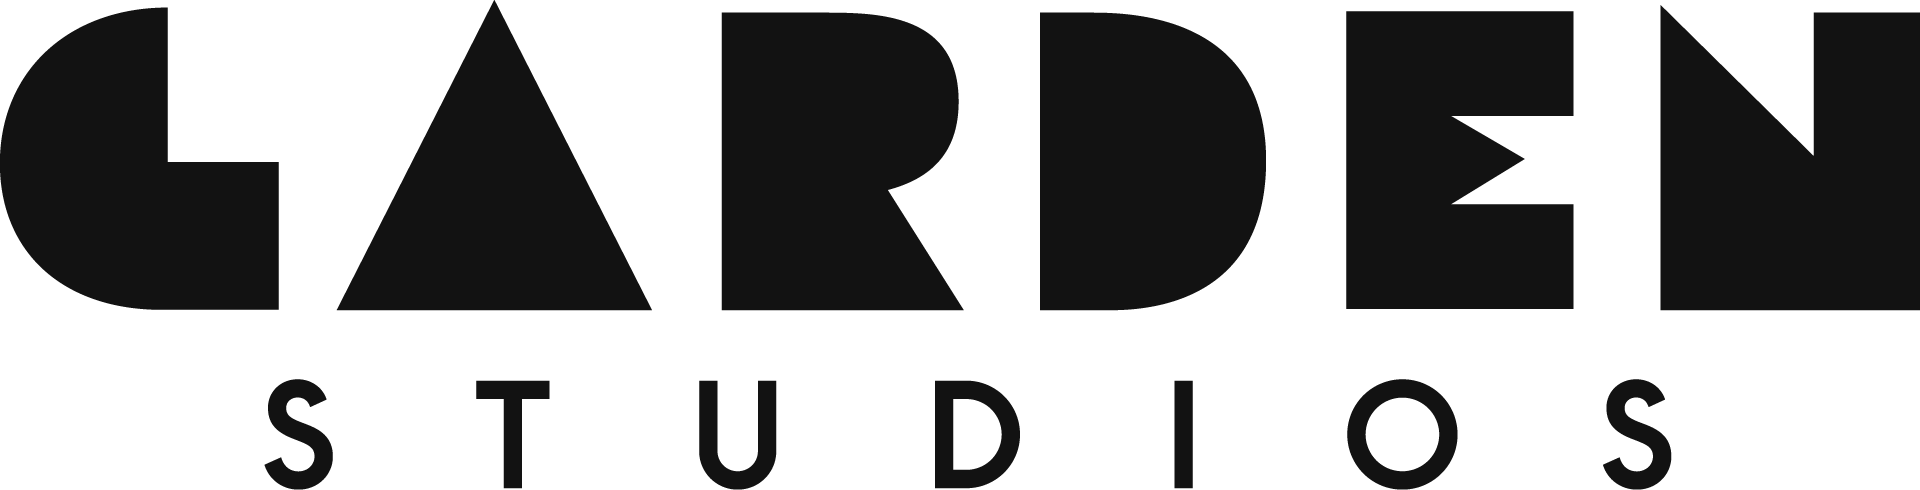 logo for Garden Studios